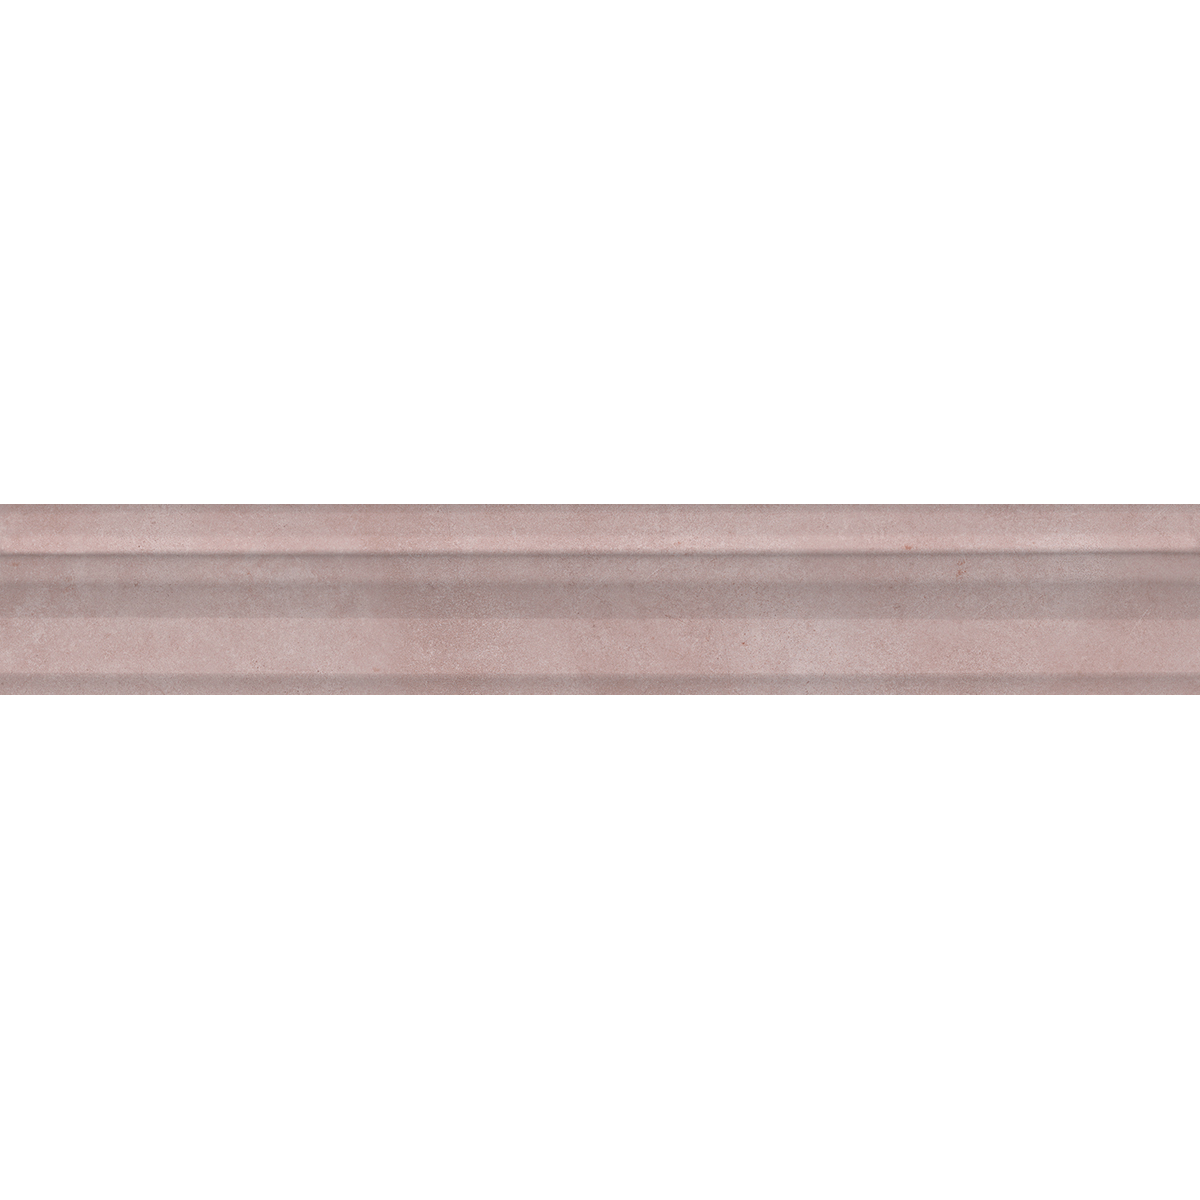 Бордюр Kerama Marazzi Багет Марсо розовый обрезной 30x5 см BLC020R керамический бордюр kerama marazzi бамбу багет марсо белый обрезной blc017r 5х30 см